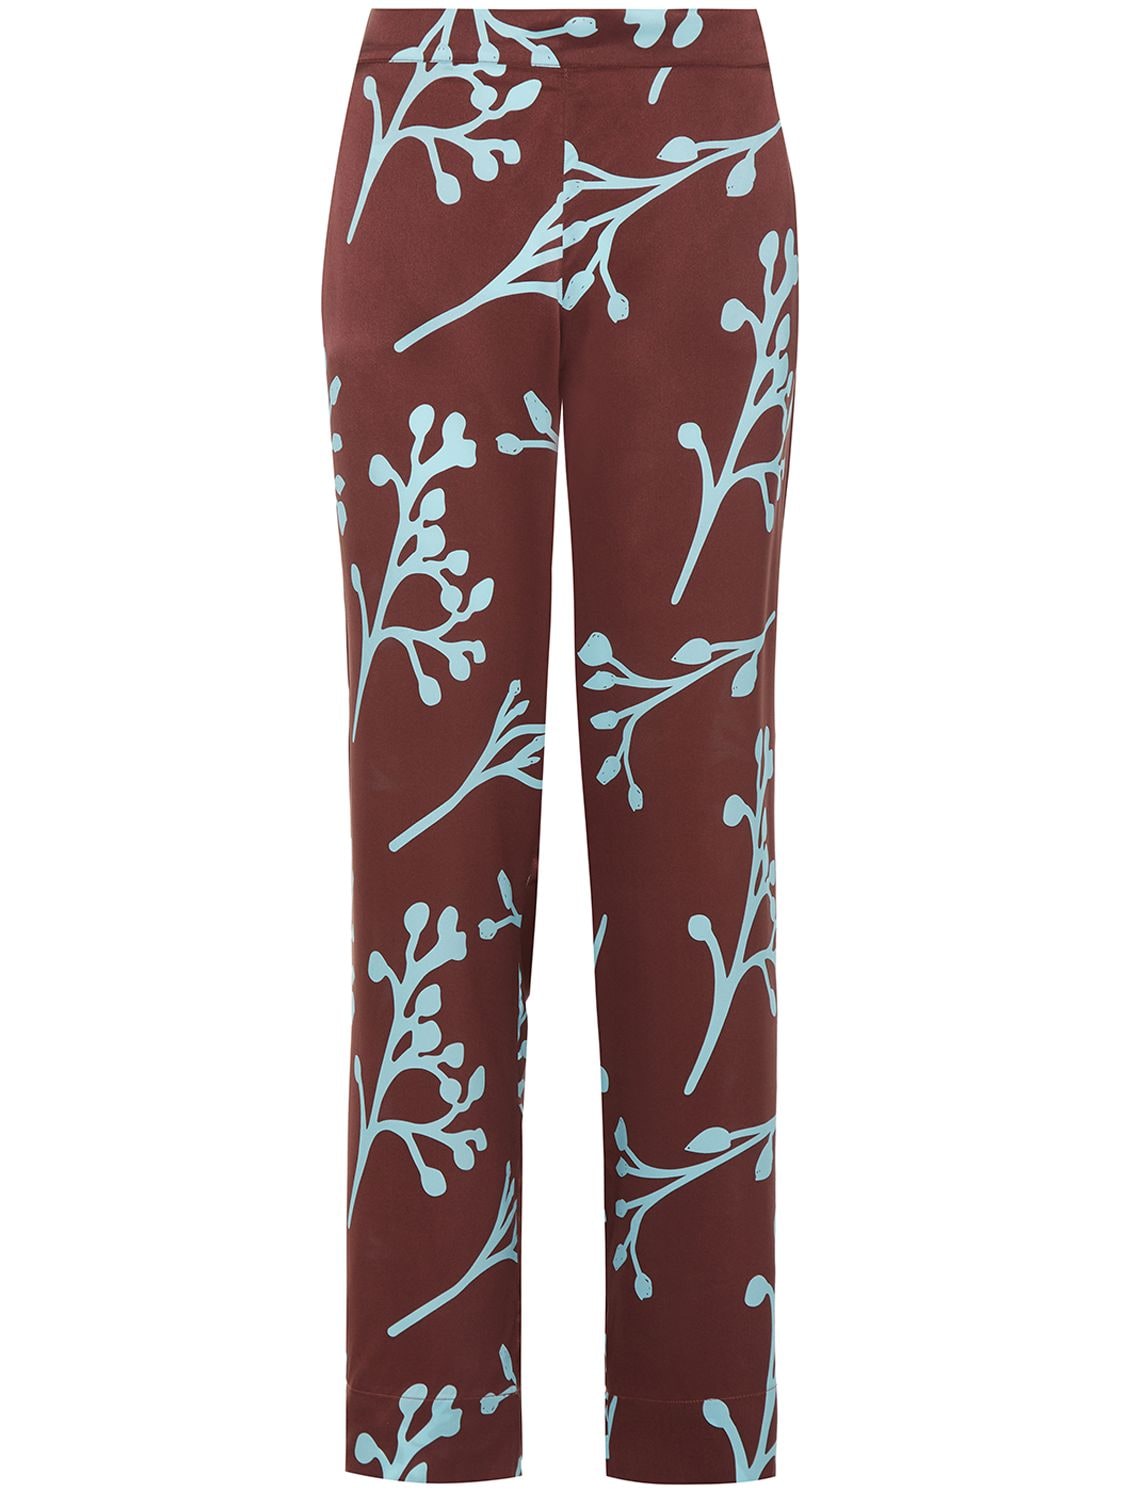 The London Printed Silk Pajama Pants